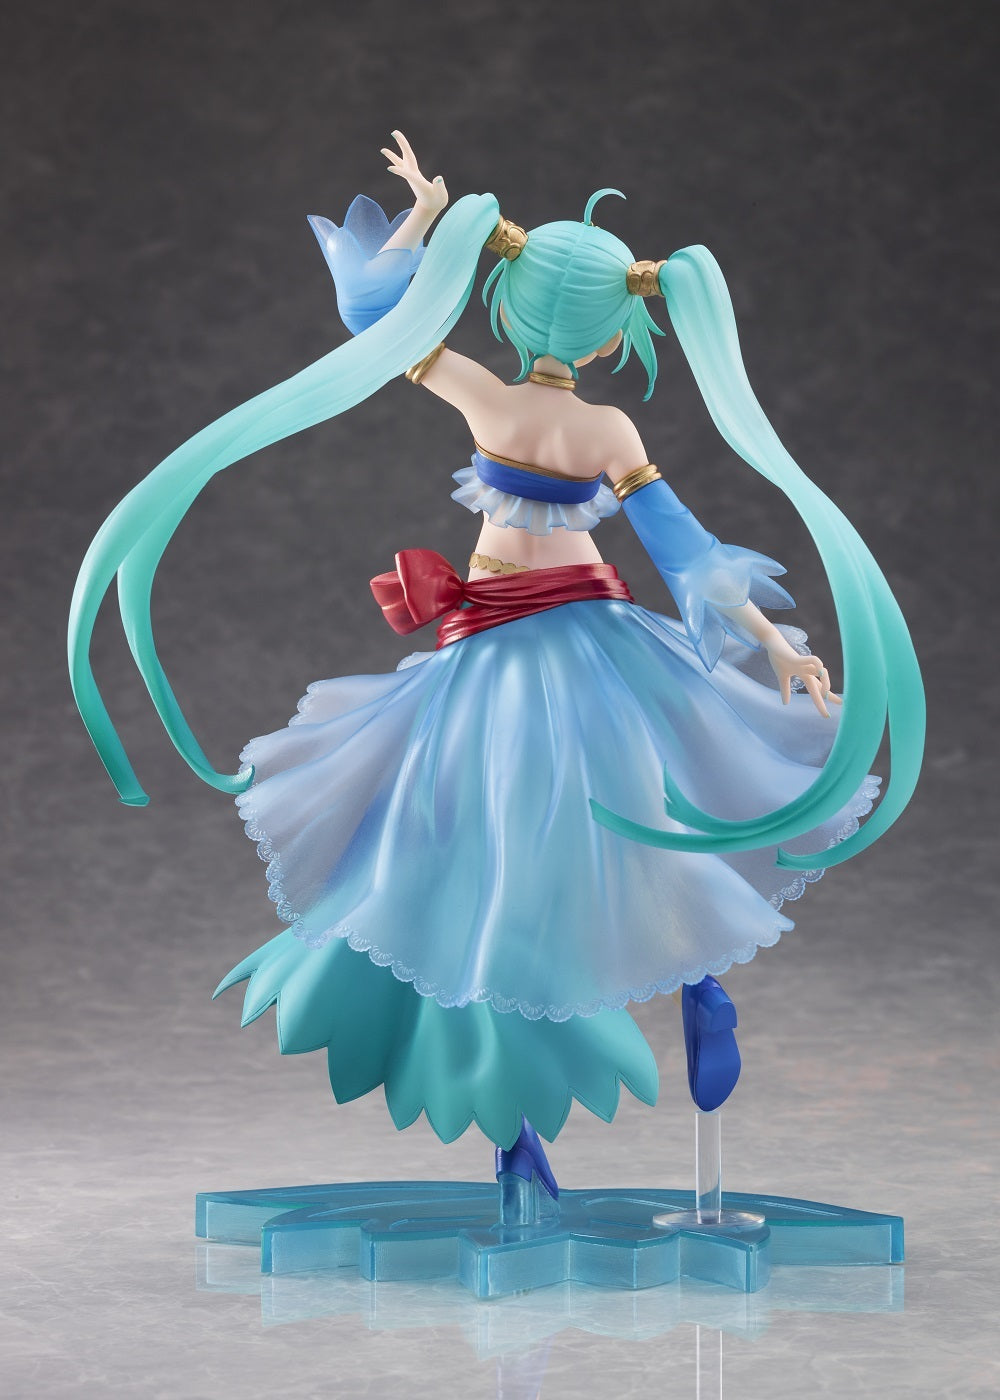 Taito Prize Figure: Vocaloid - Hatsune Miku Princesa Version Arabe Figura